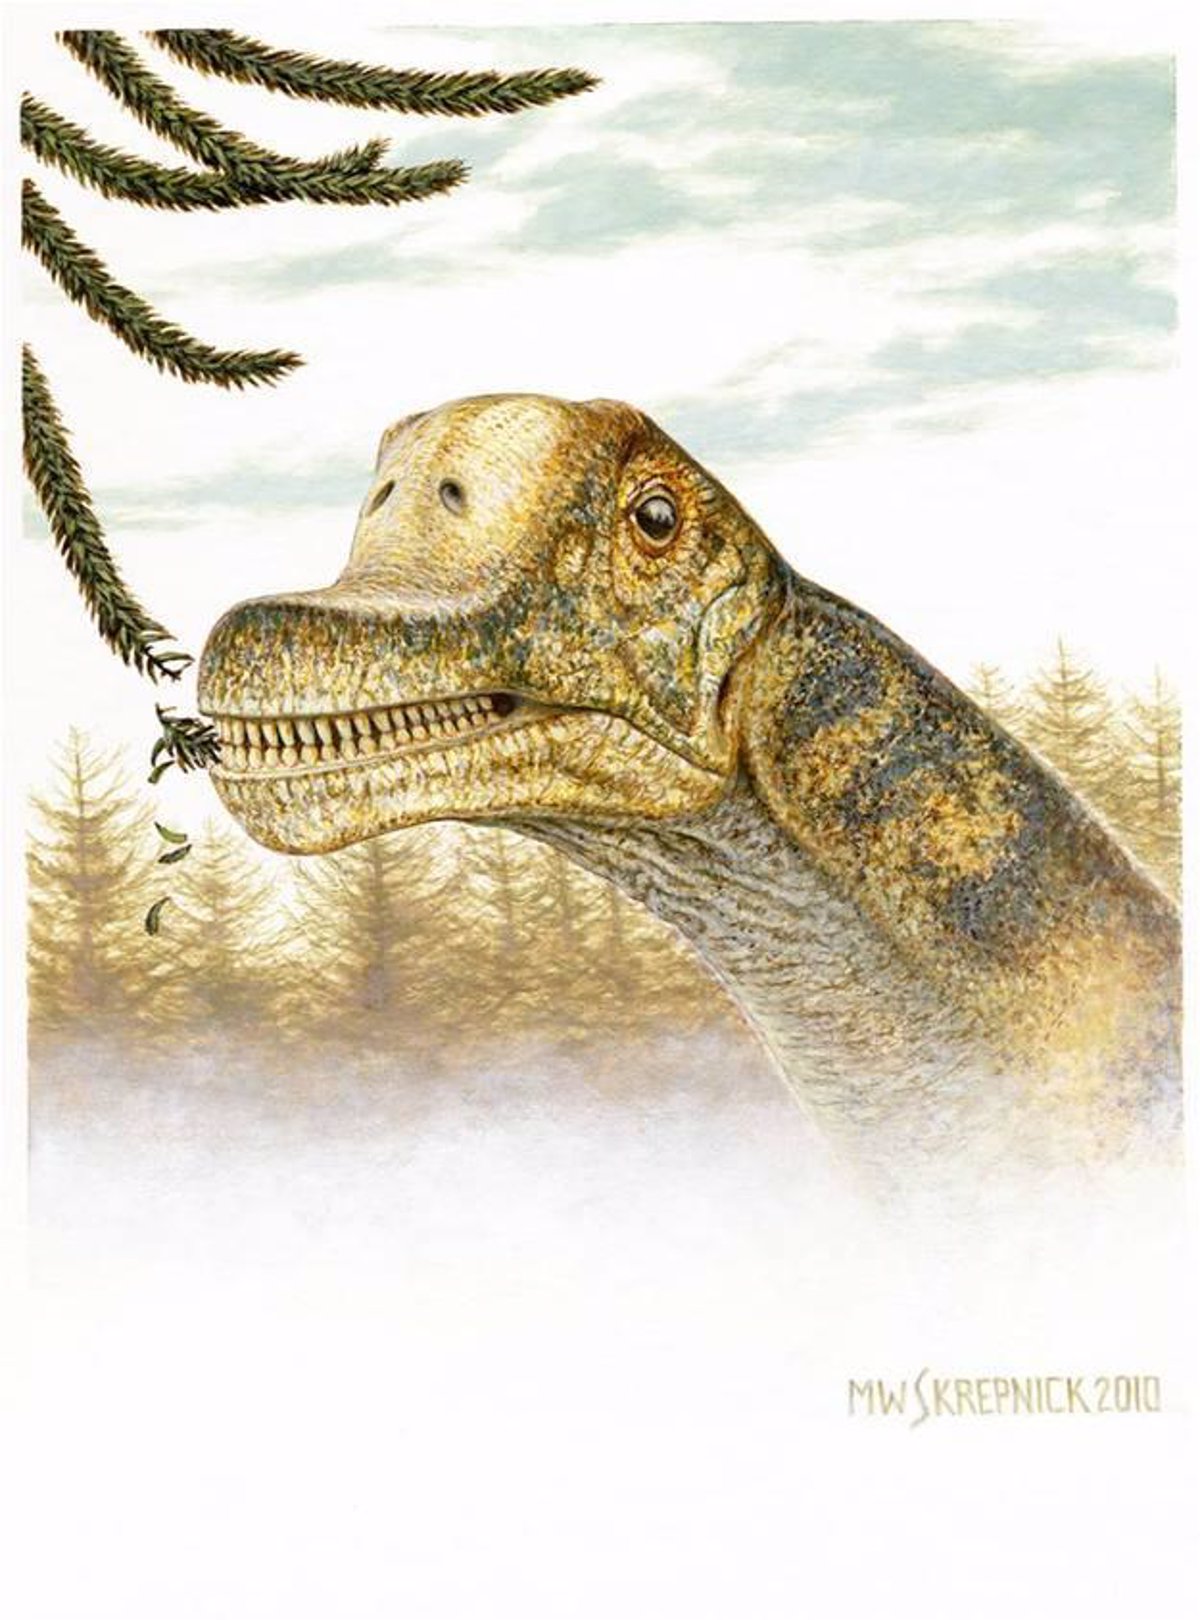 Desvelado el rostro de un dinosaurio herbívoro de cuello largo